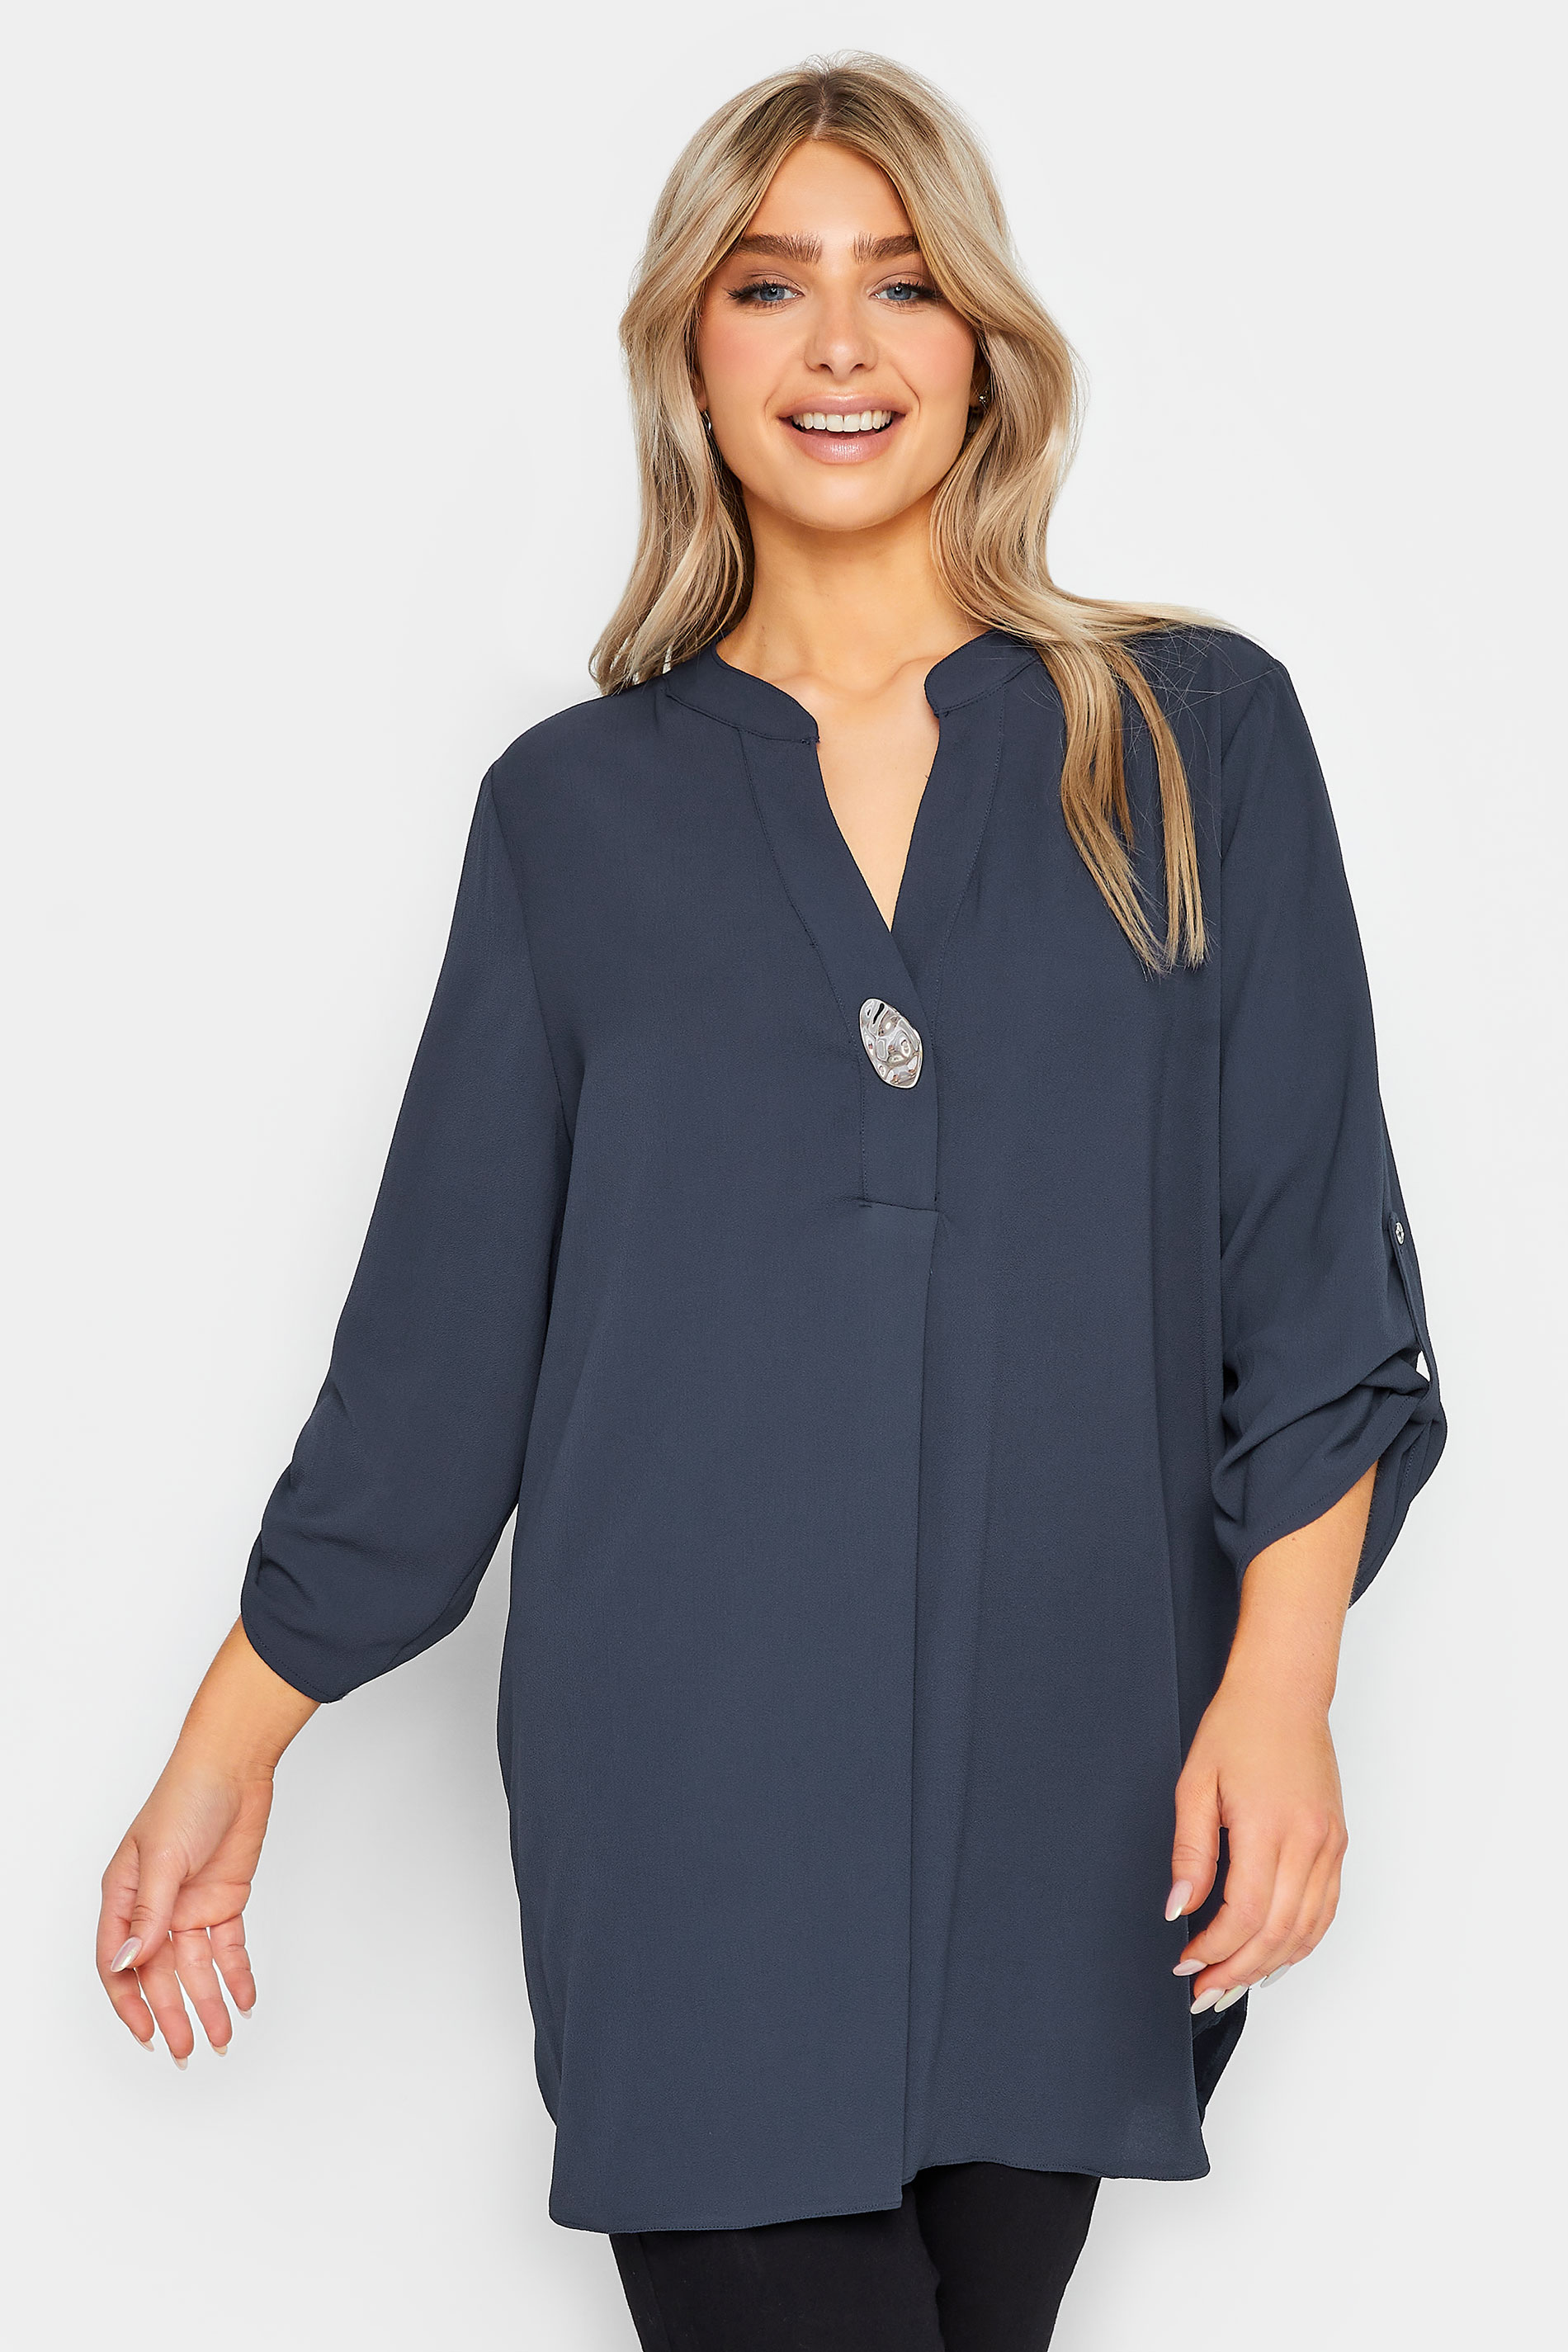 M&Co Blue Long Sleeve Button Blouse | M&Co 2